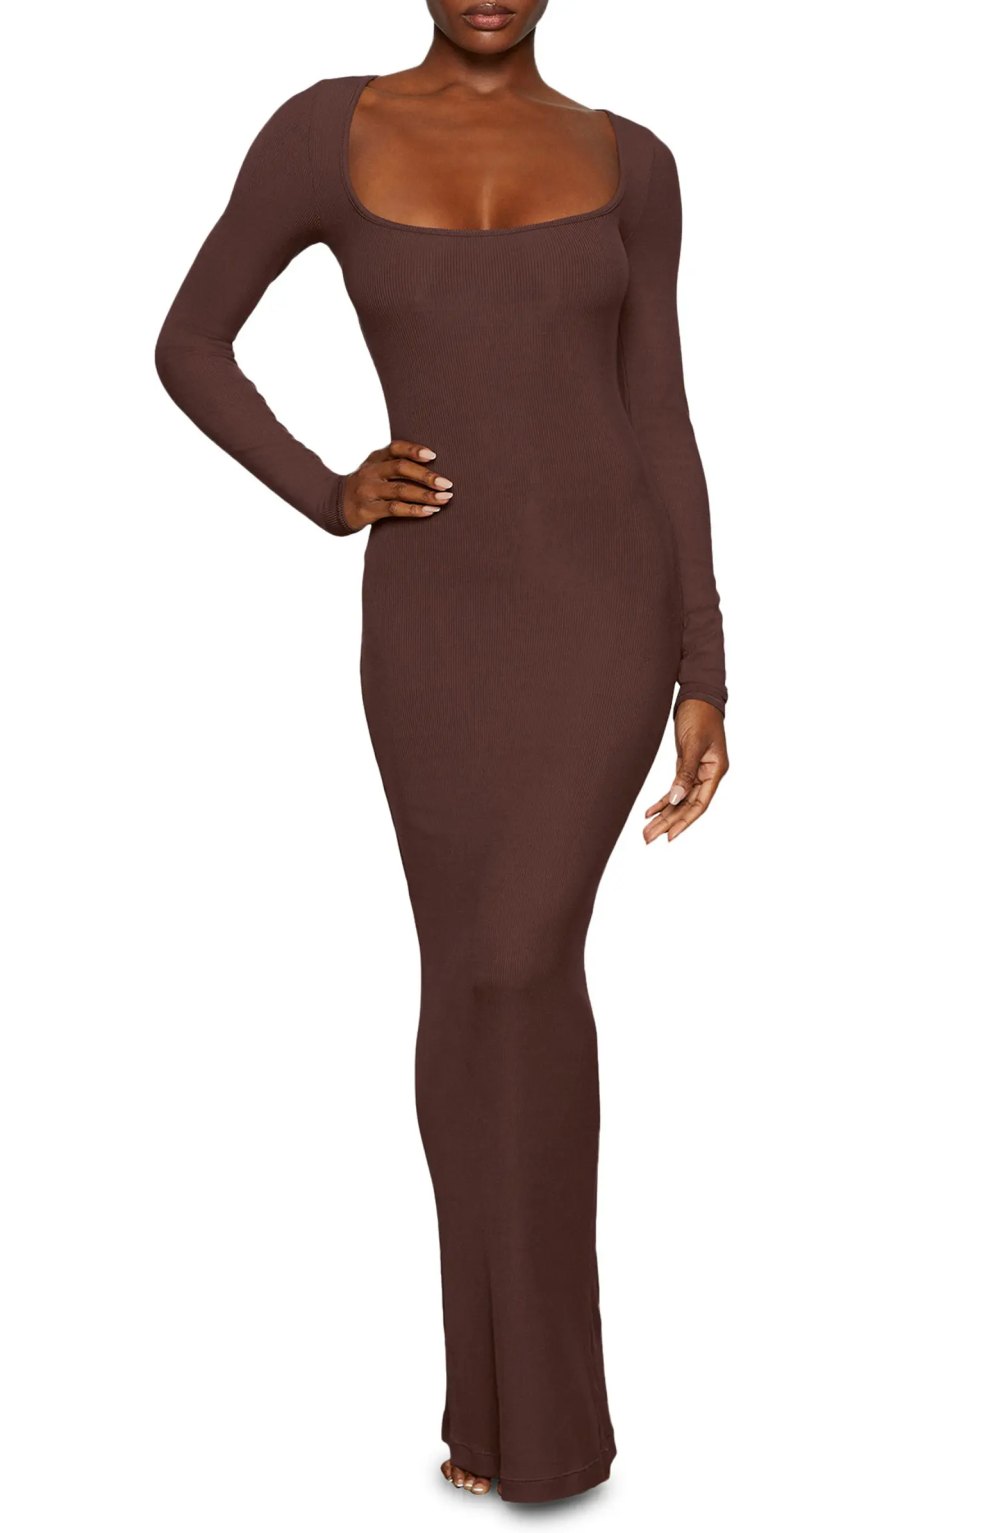 https://www.usmagazine.com/wp-content/uploads/2022/12/brown-skims-dress.webp?w=1000&quality=86&strip=all